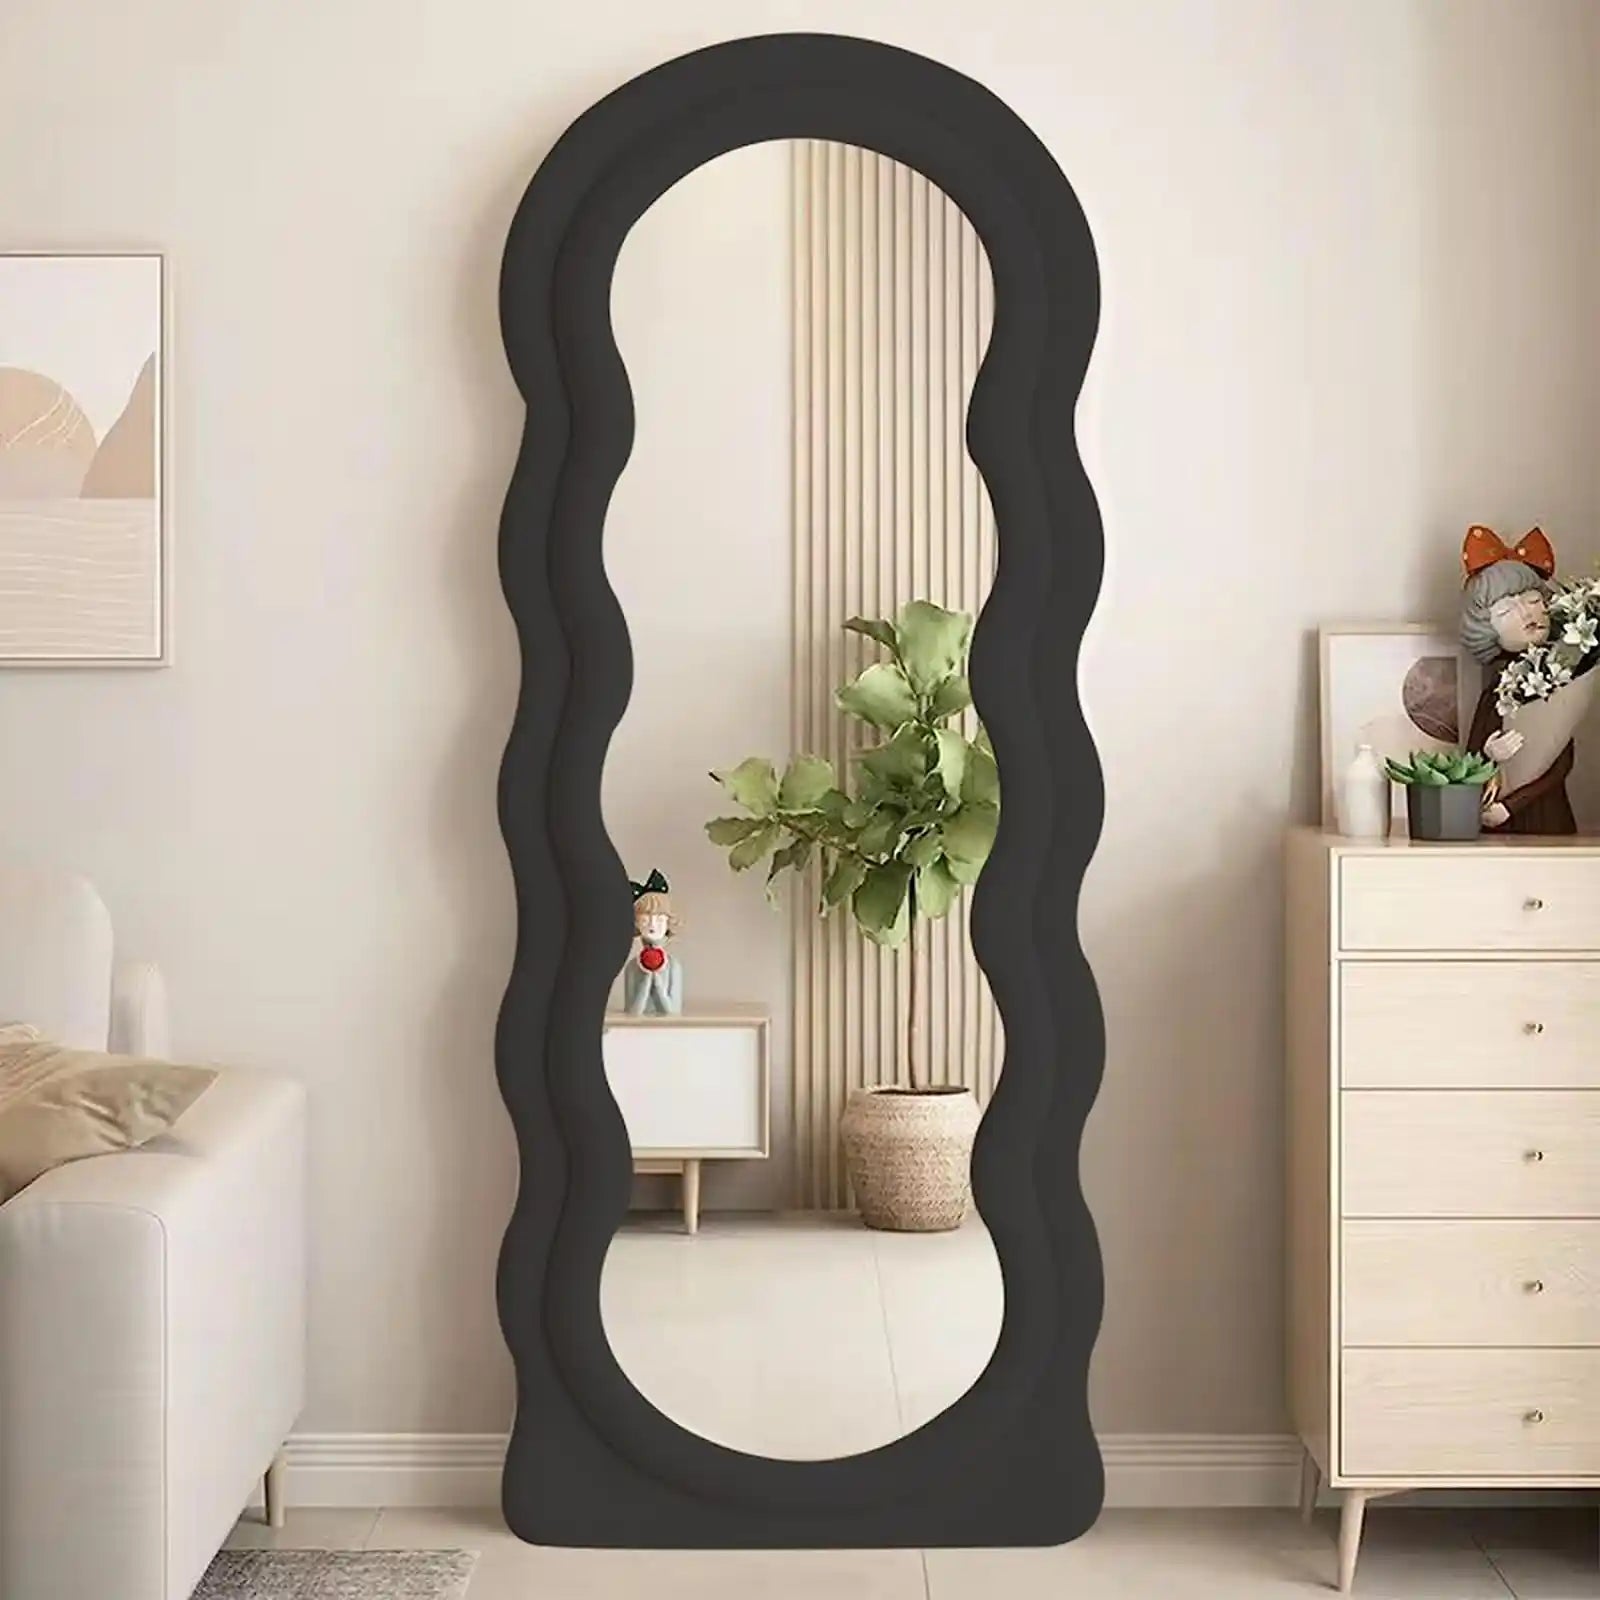 Espejo de longitud completa de 63 x 24 pulgadas, espejo ondulado irregular, espejo de piso ondulado, espejo montado en la pared de pie o apoyado contra la pared para dormitorio, sala de estar, espejo con marco de madera envuelto en franela, color negro 